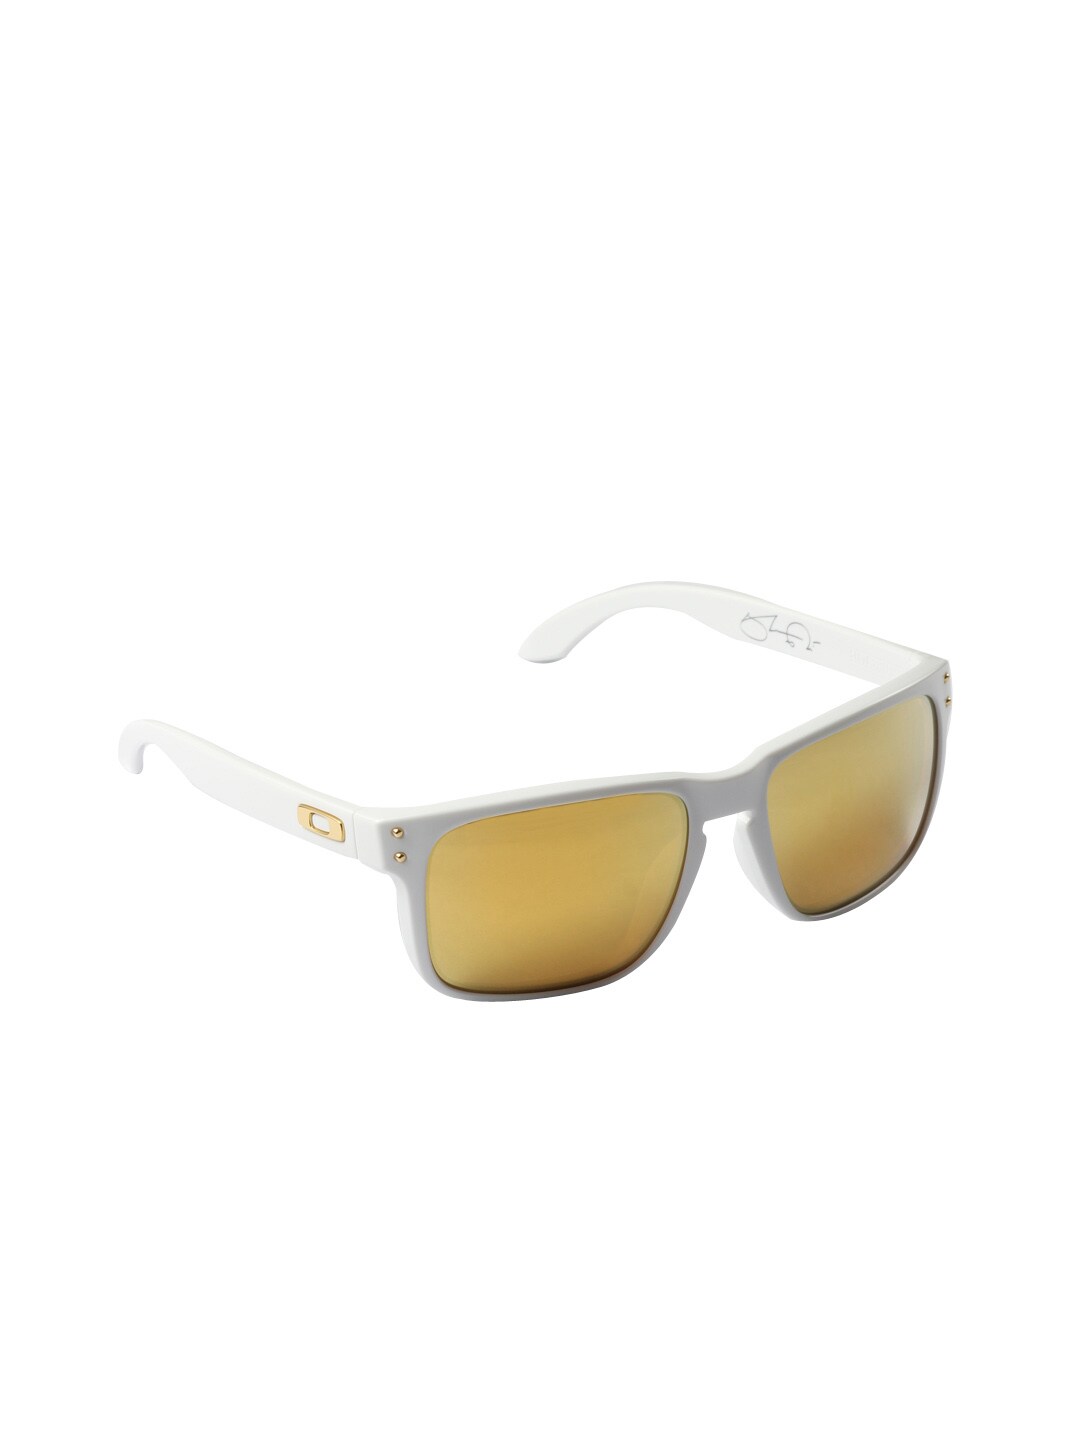 Oakley Men Holbrook White Sunglasses